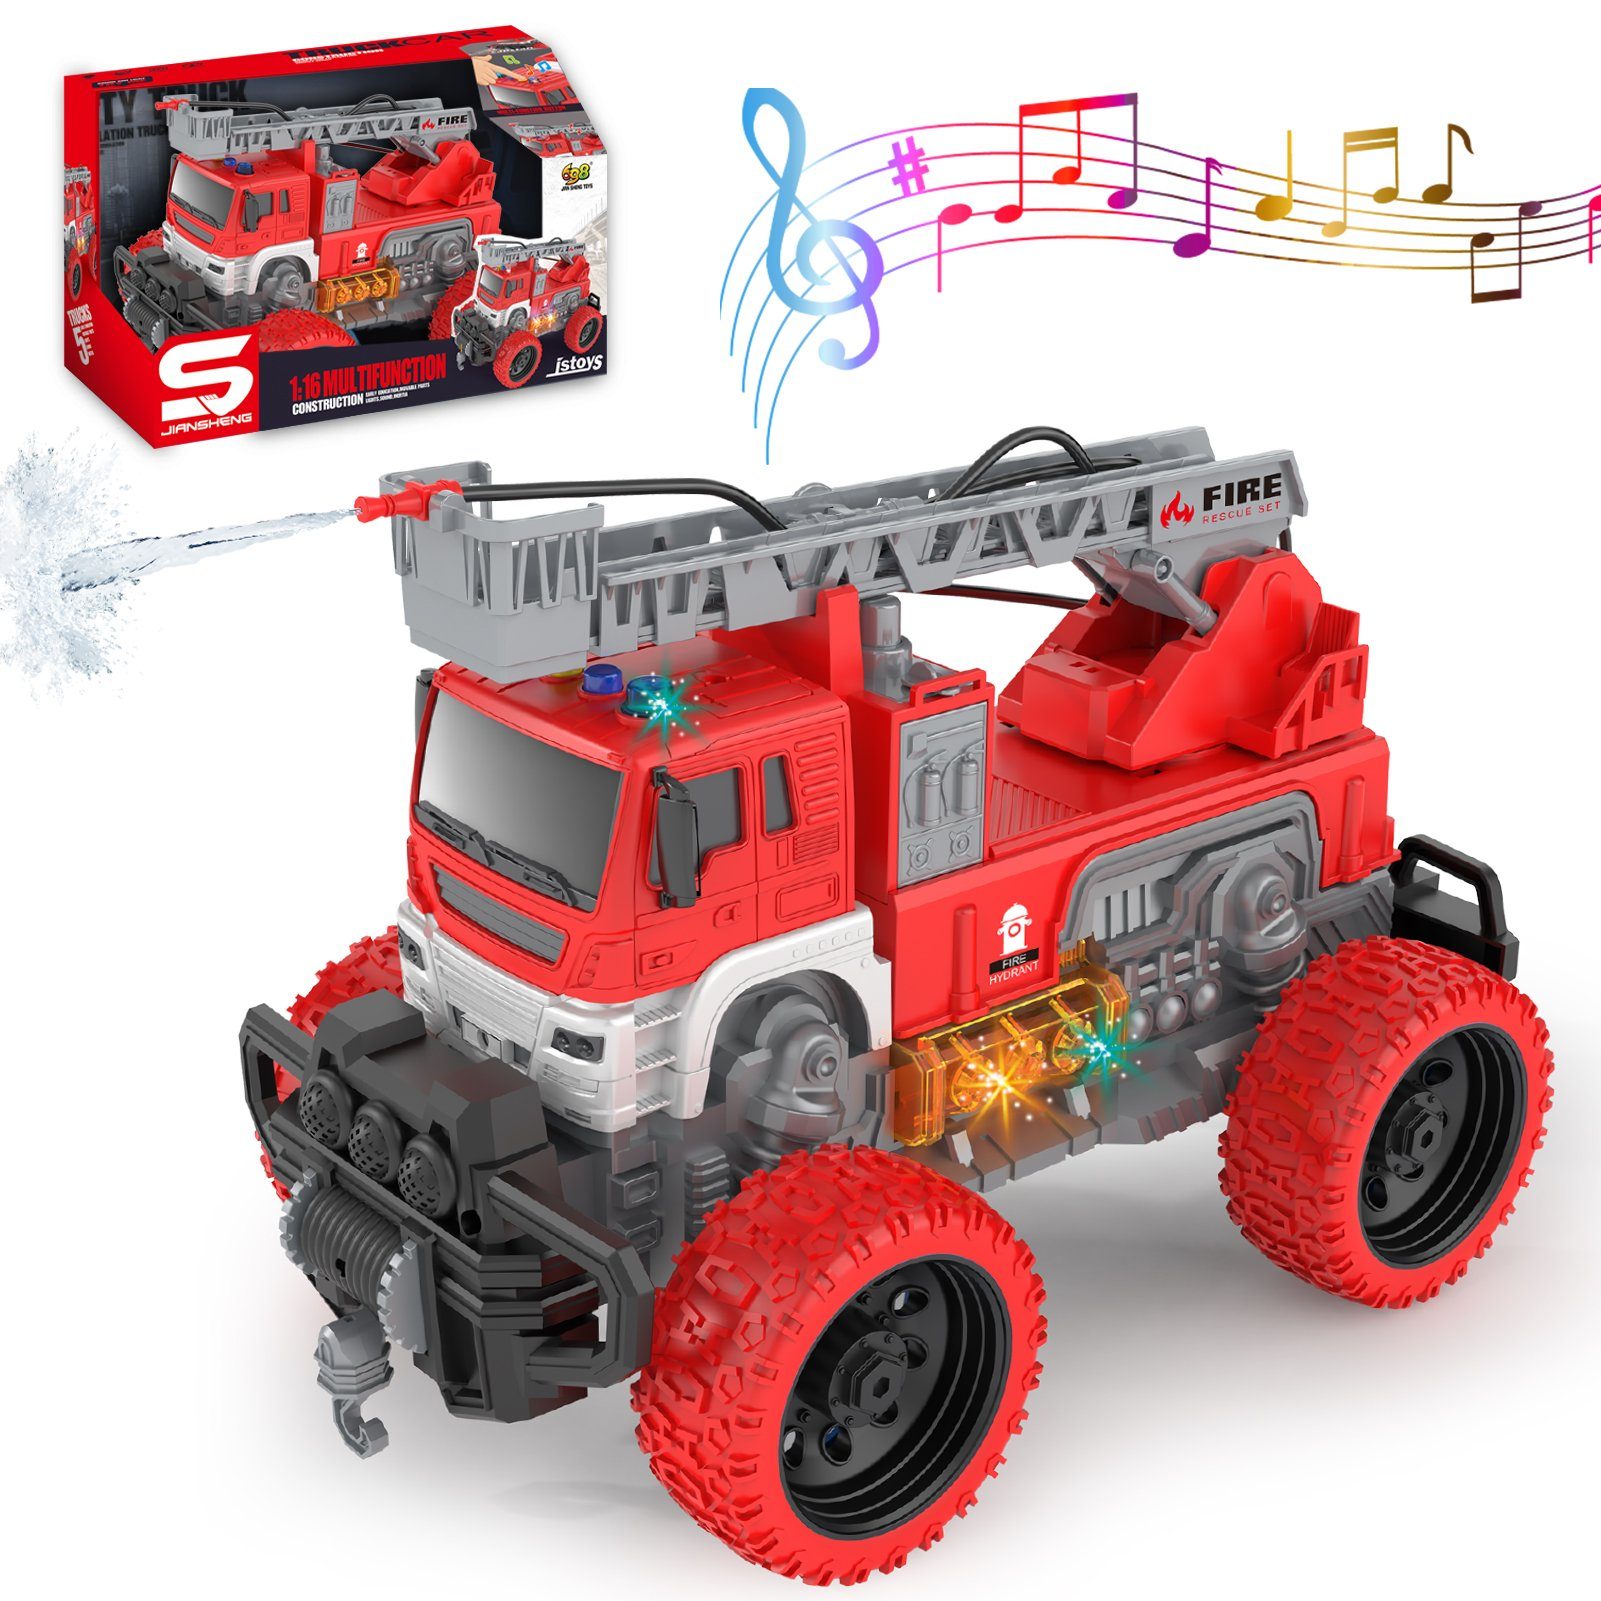 Xruison Feuerwehrauto Spielzeug Auto mit Sound und Licht, 4D LED Licht  Feuerwehr Spielzeug, Groß Elektrisch Feuerwehrauto, Beleuchtete  Spielzeugauto